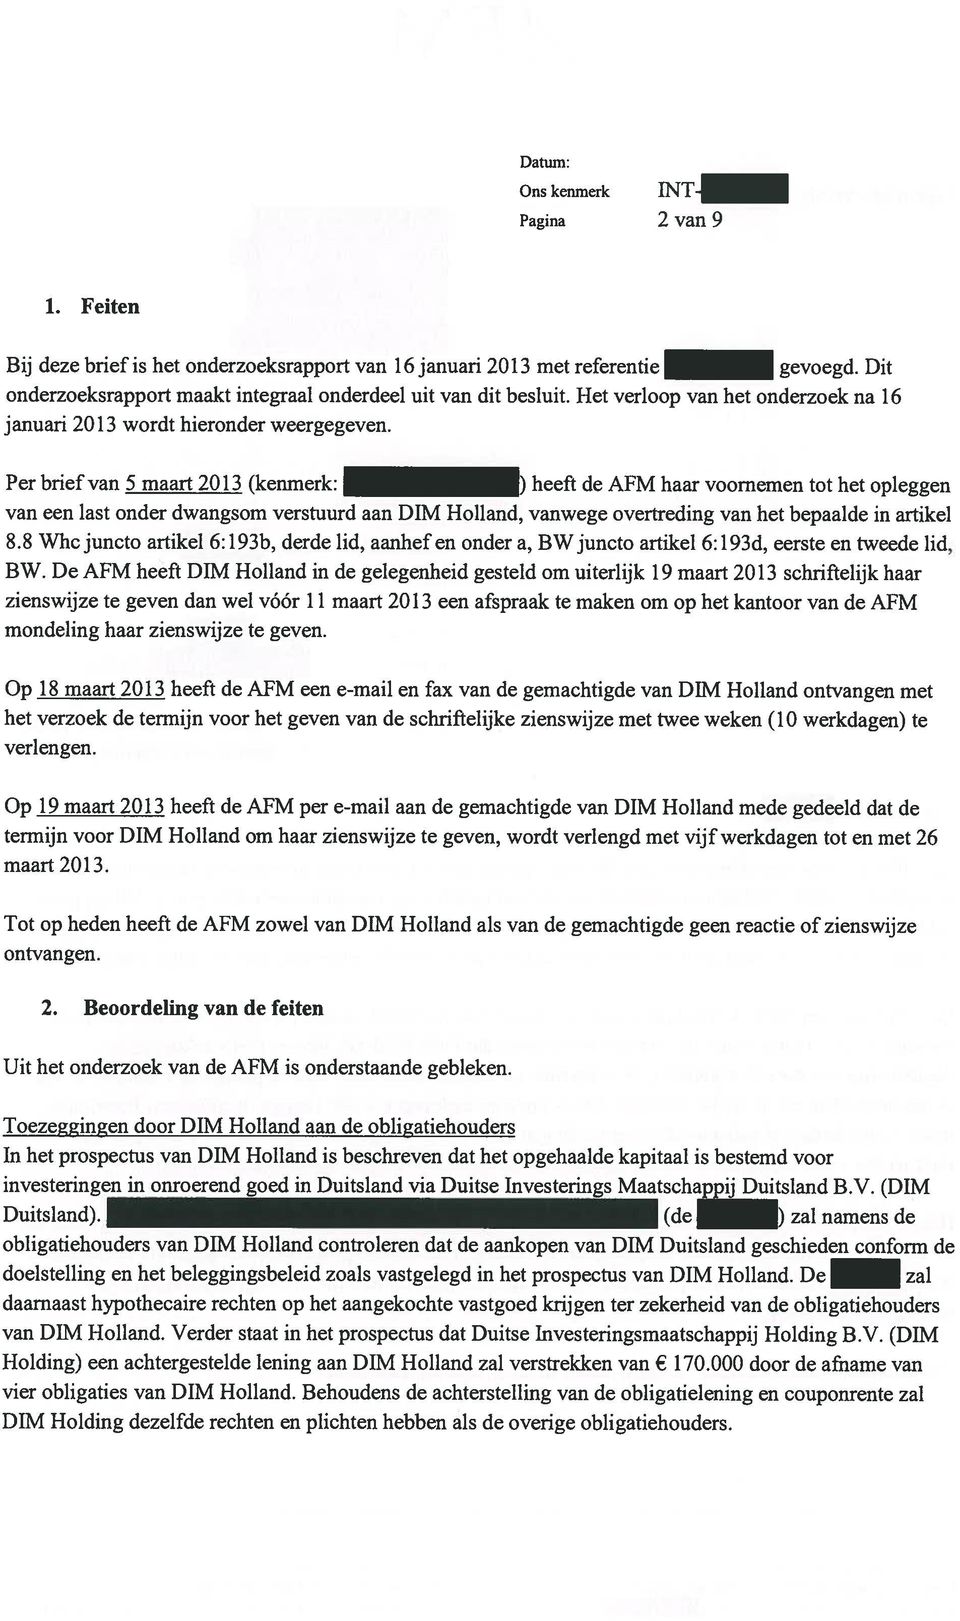 Per brief van 5 maart 2013 (kenmerk: ) heeft de AFM haar voornemen tot het opleggen van een last onder dwangsom verstuurd aan DIM Holland, vanwege overtreding van het bepaalde in artikel 8.